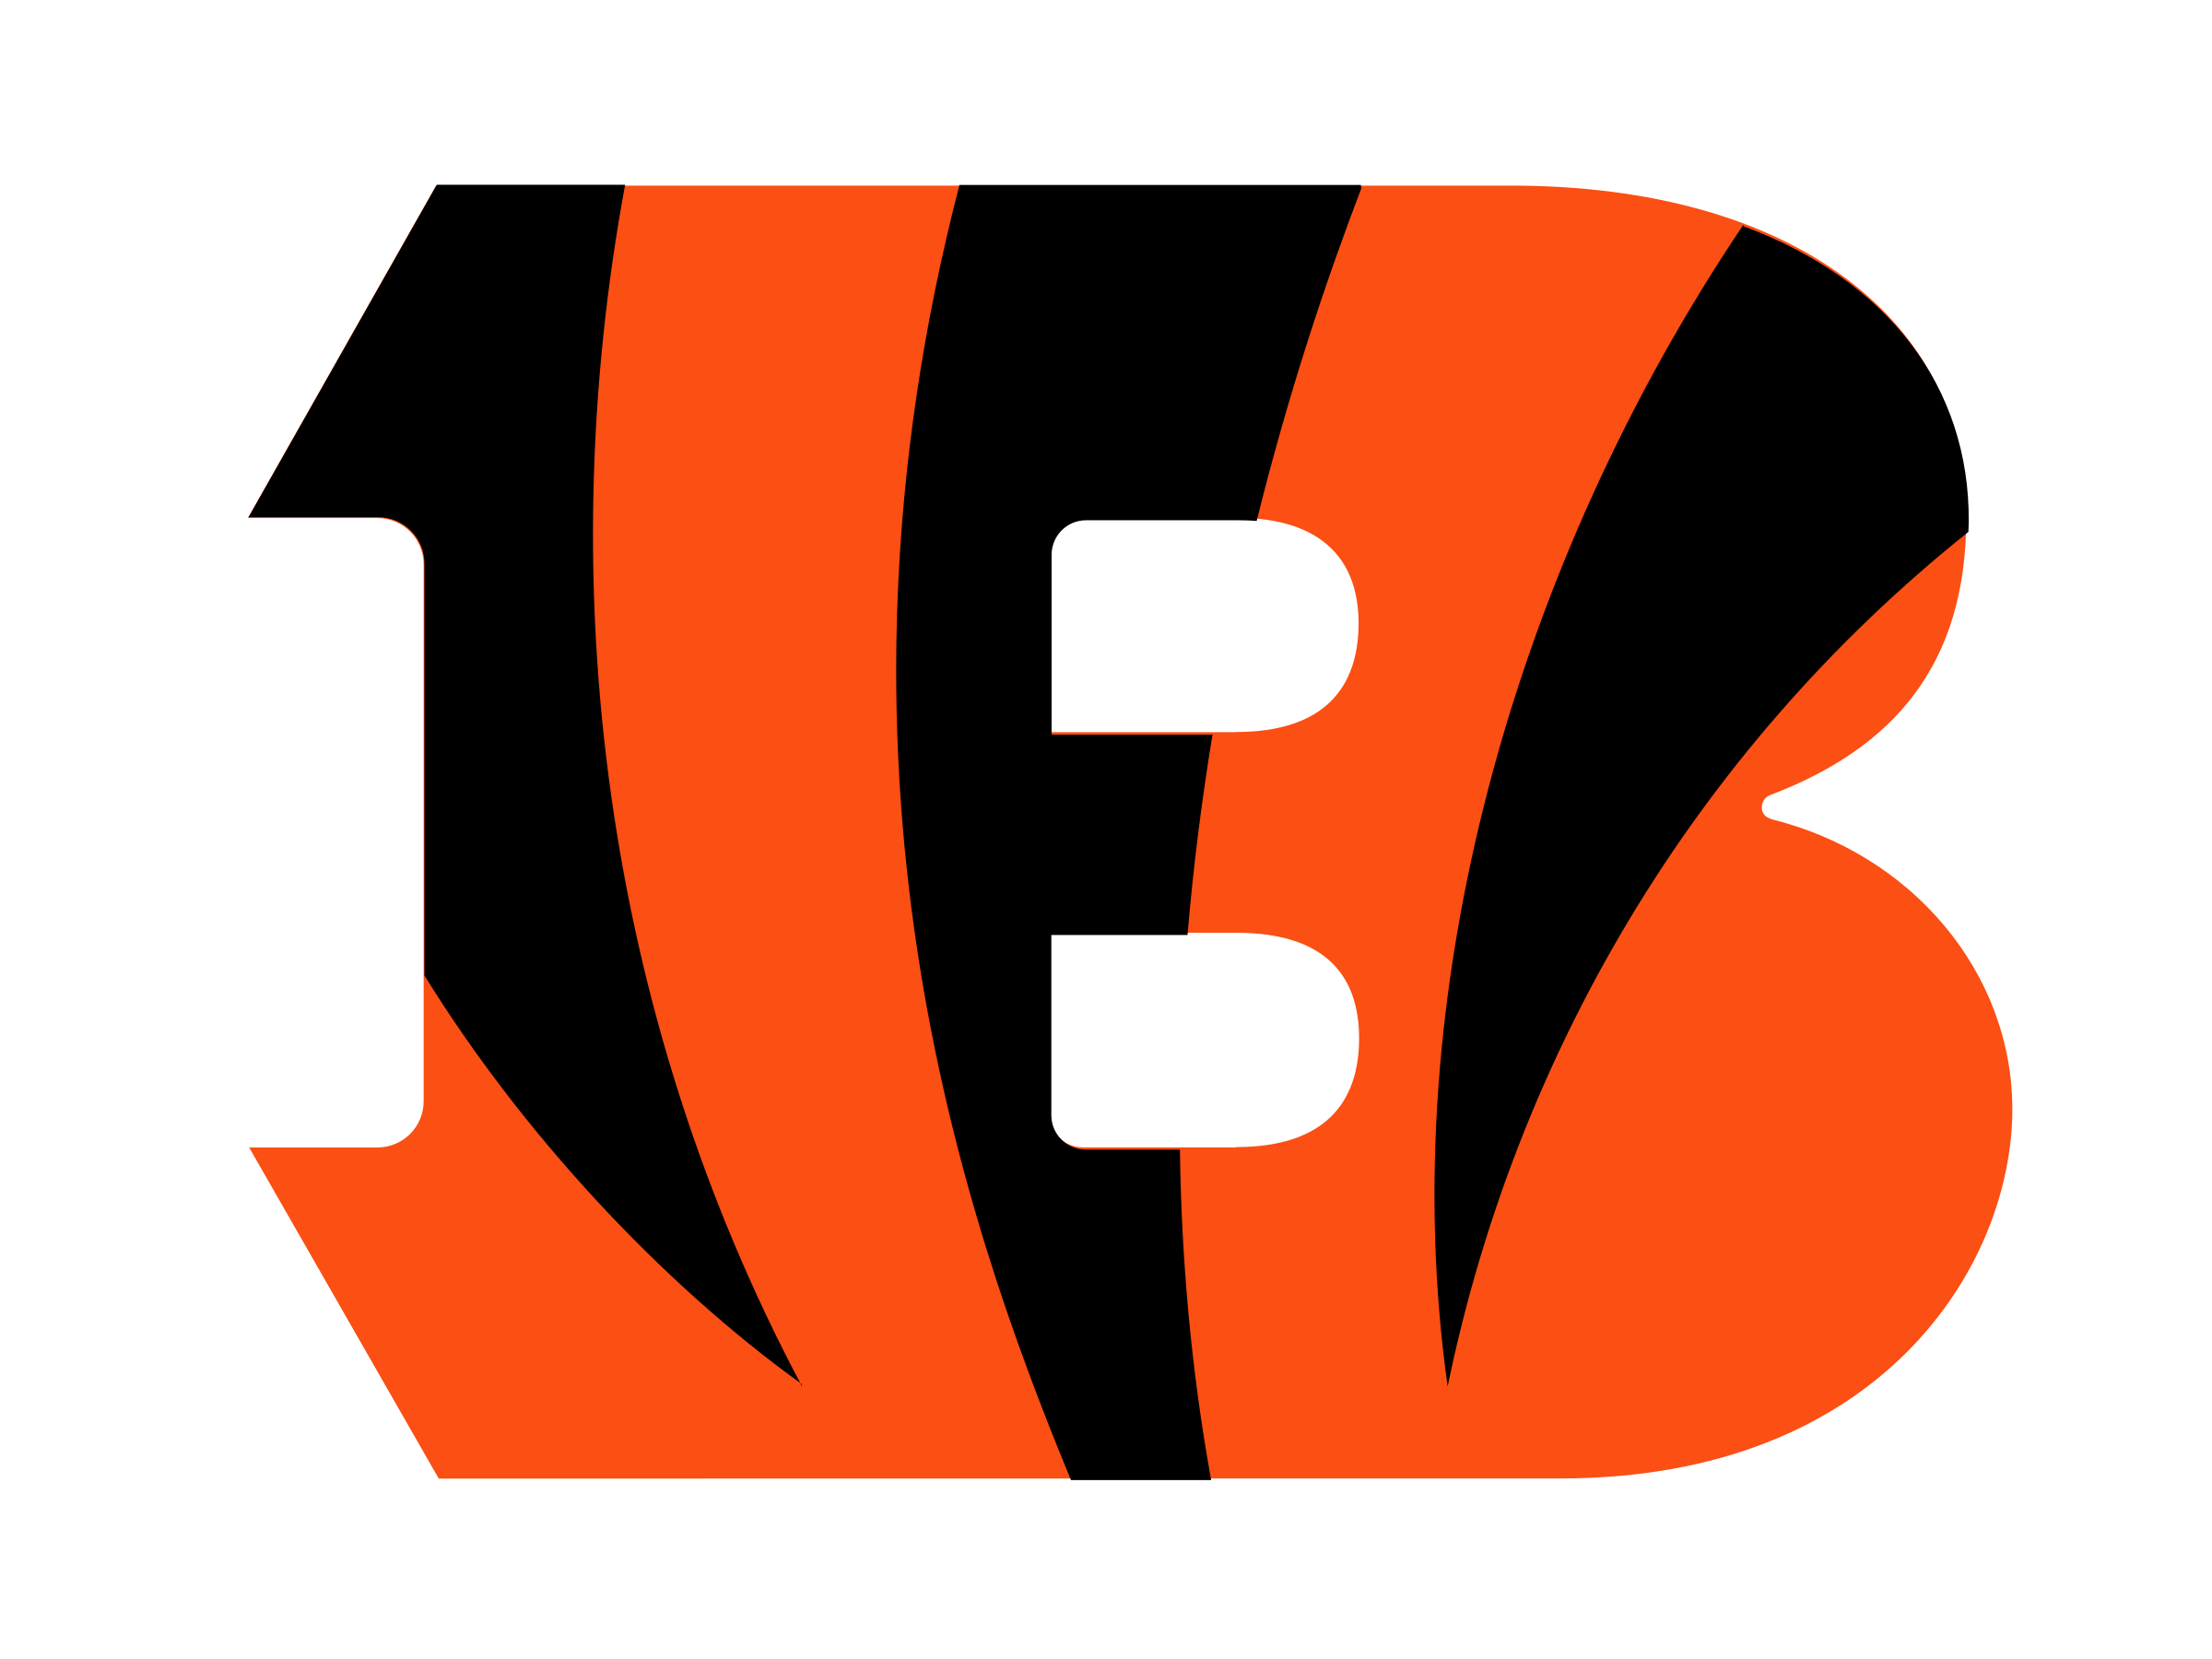 Cincinnati Bengals logo transparant